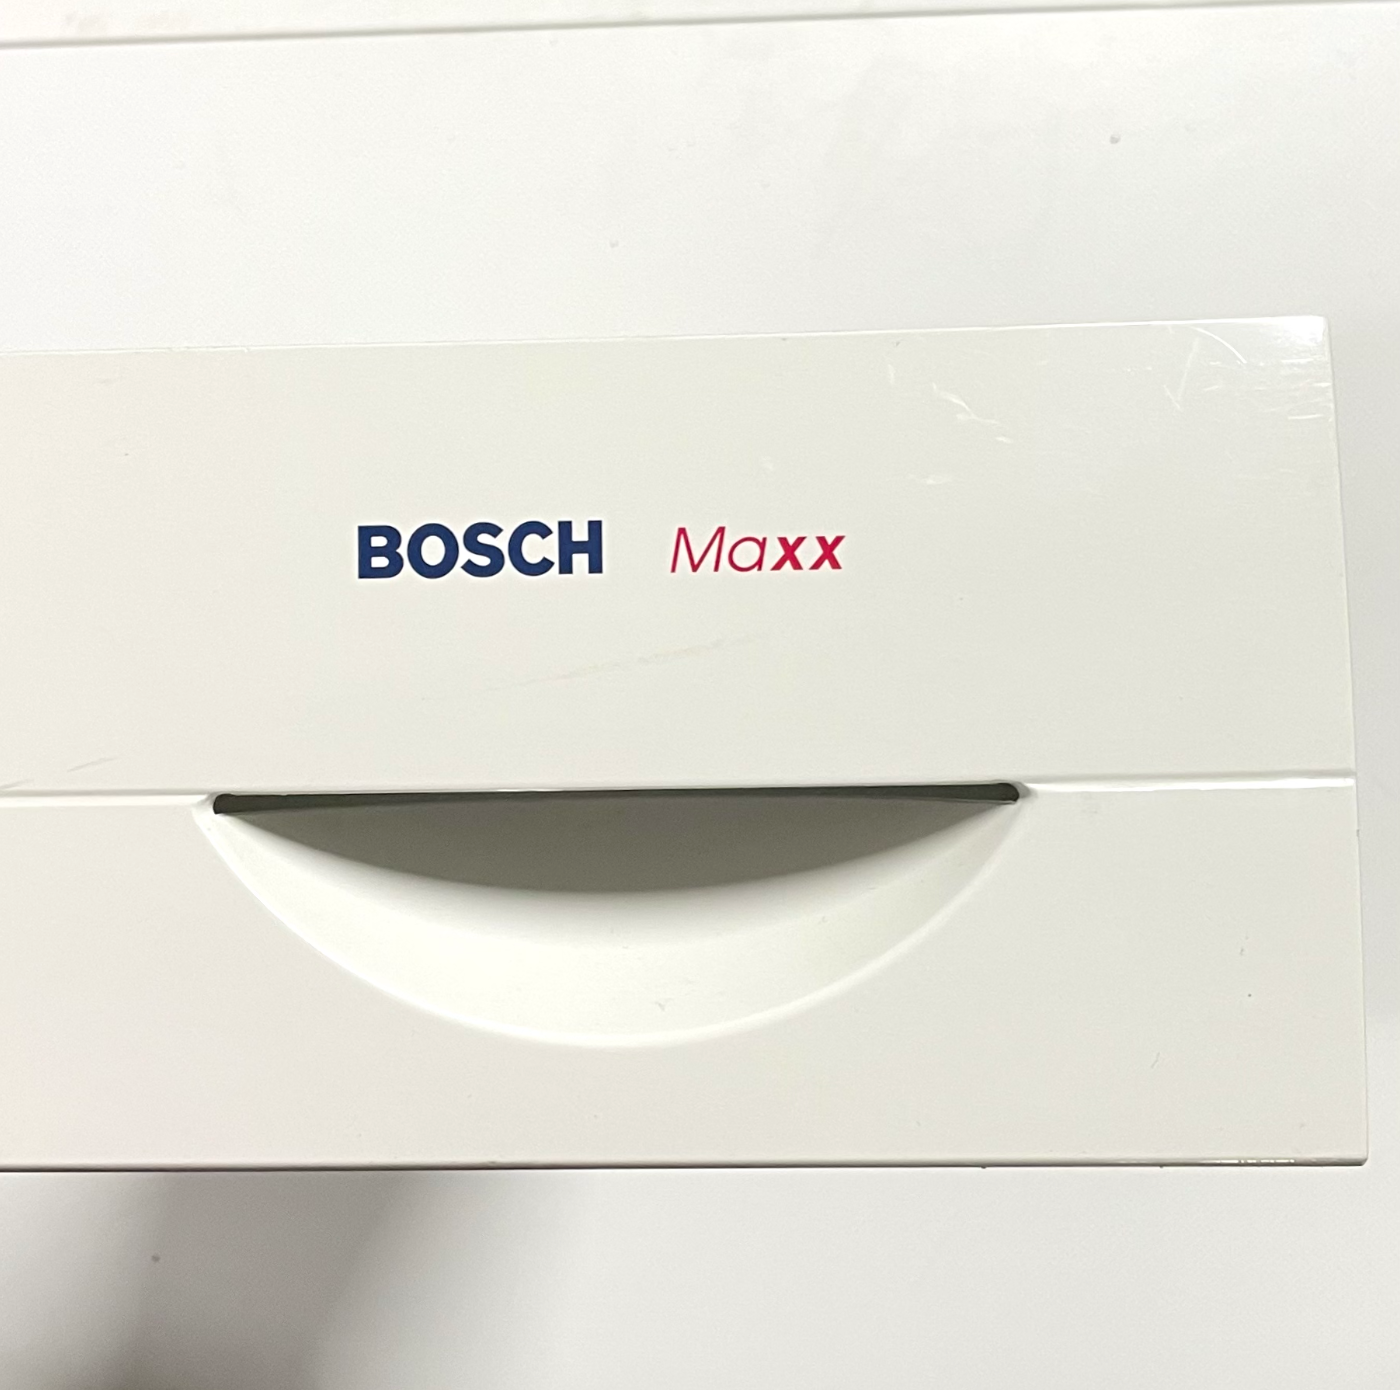 Vanntank/kondensbeholder sett til Bosch Maxx tørketrommel